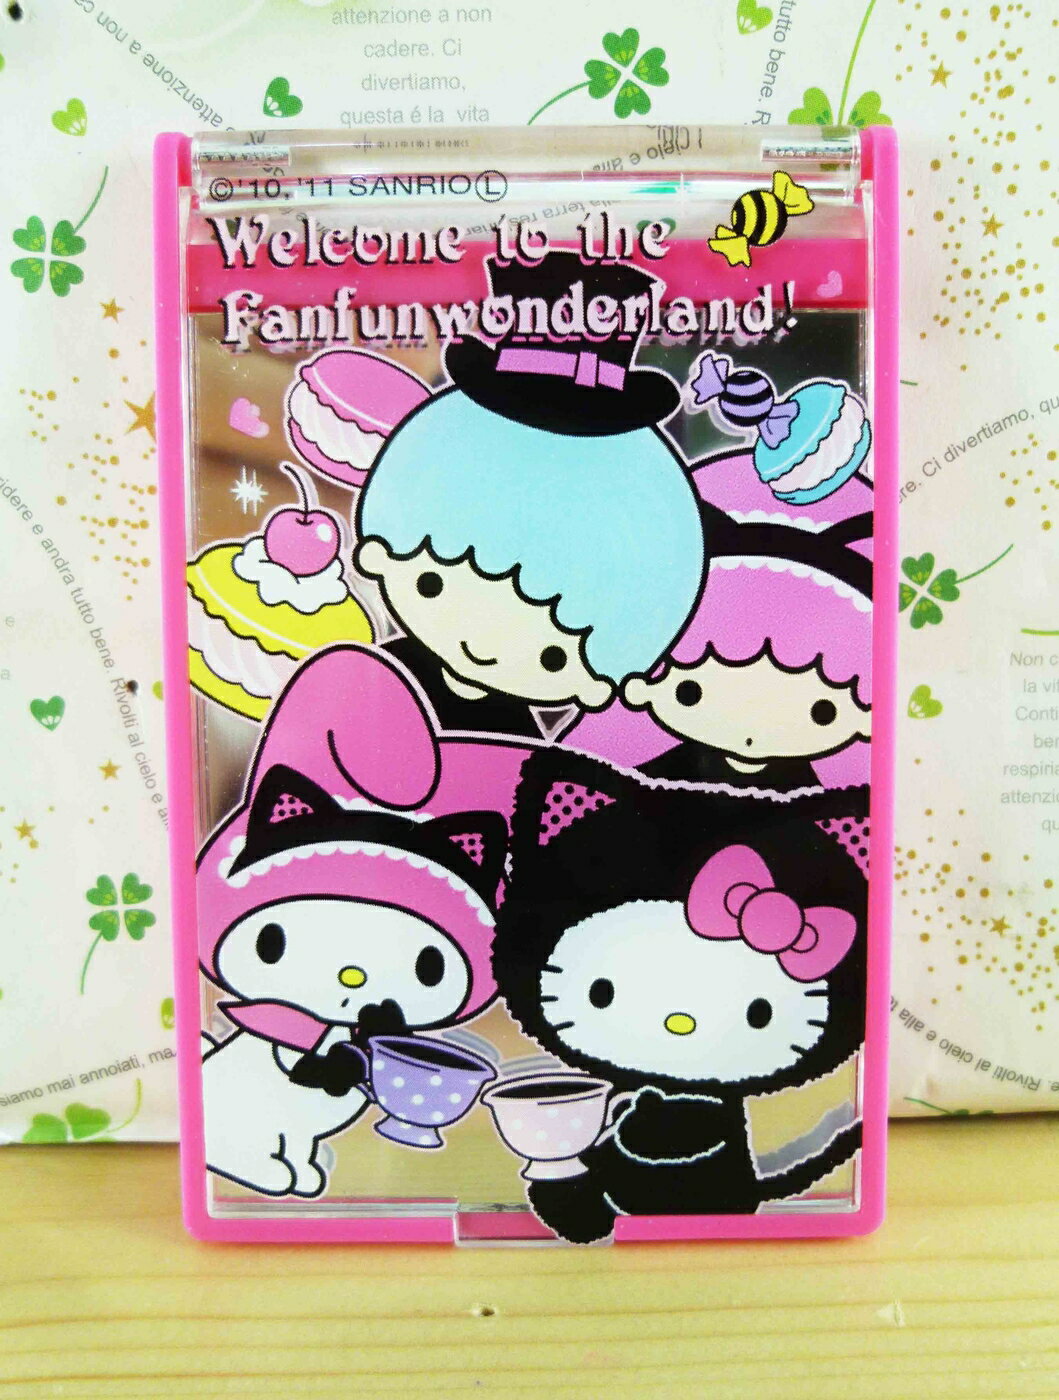 【震撼精品百貨】Hello Kitty 凱蒂貓-摺疊鏡-粉Mix 震撼日式精品百貨